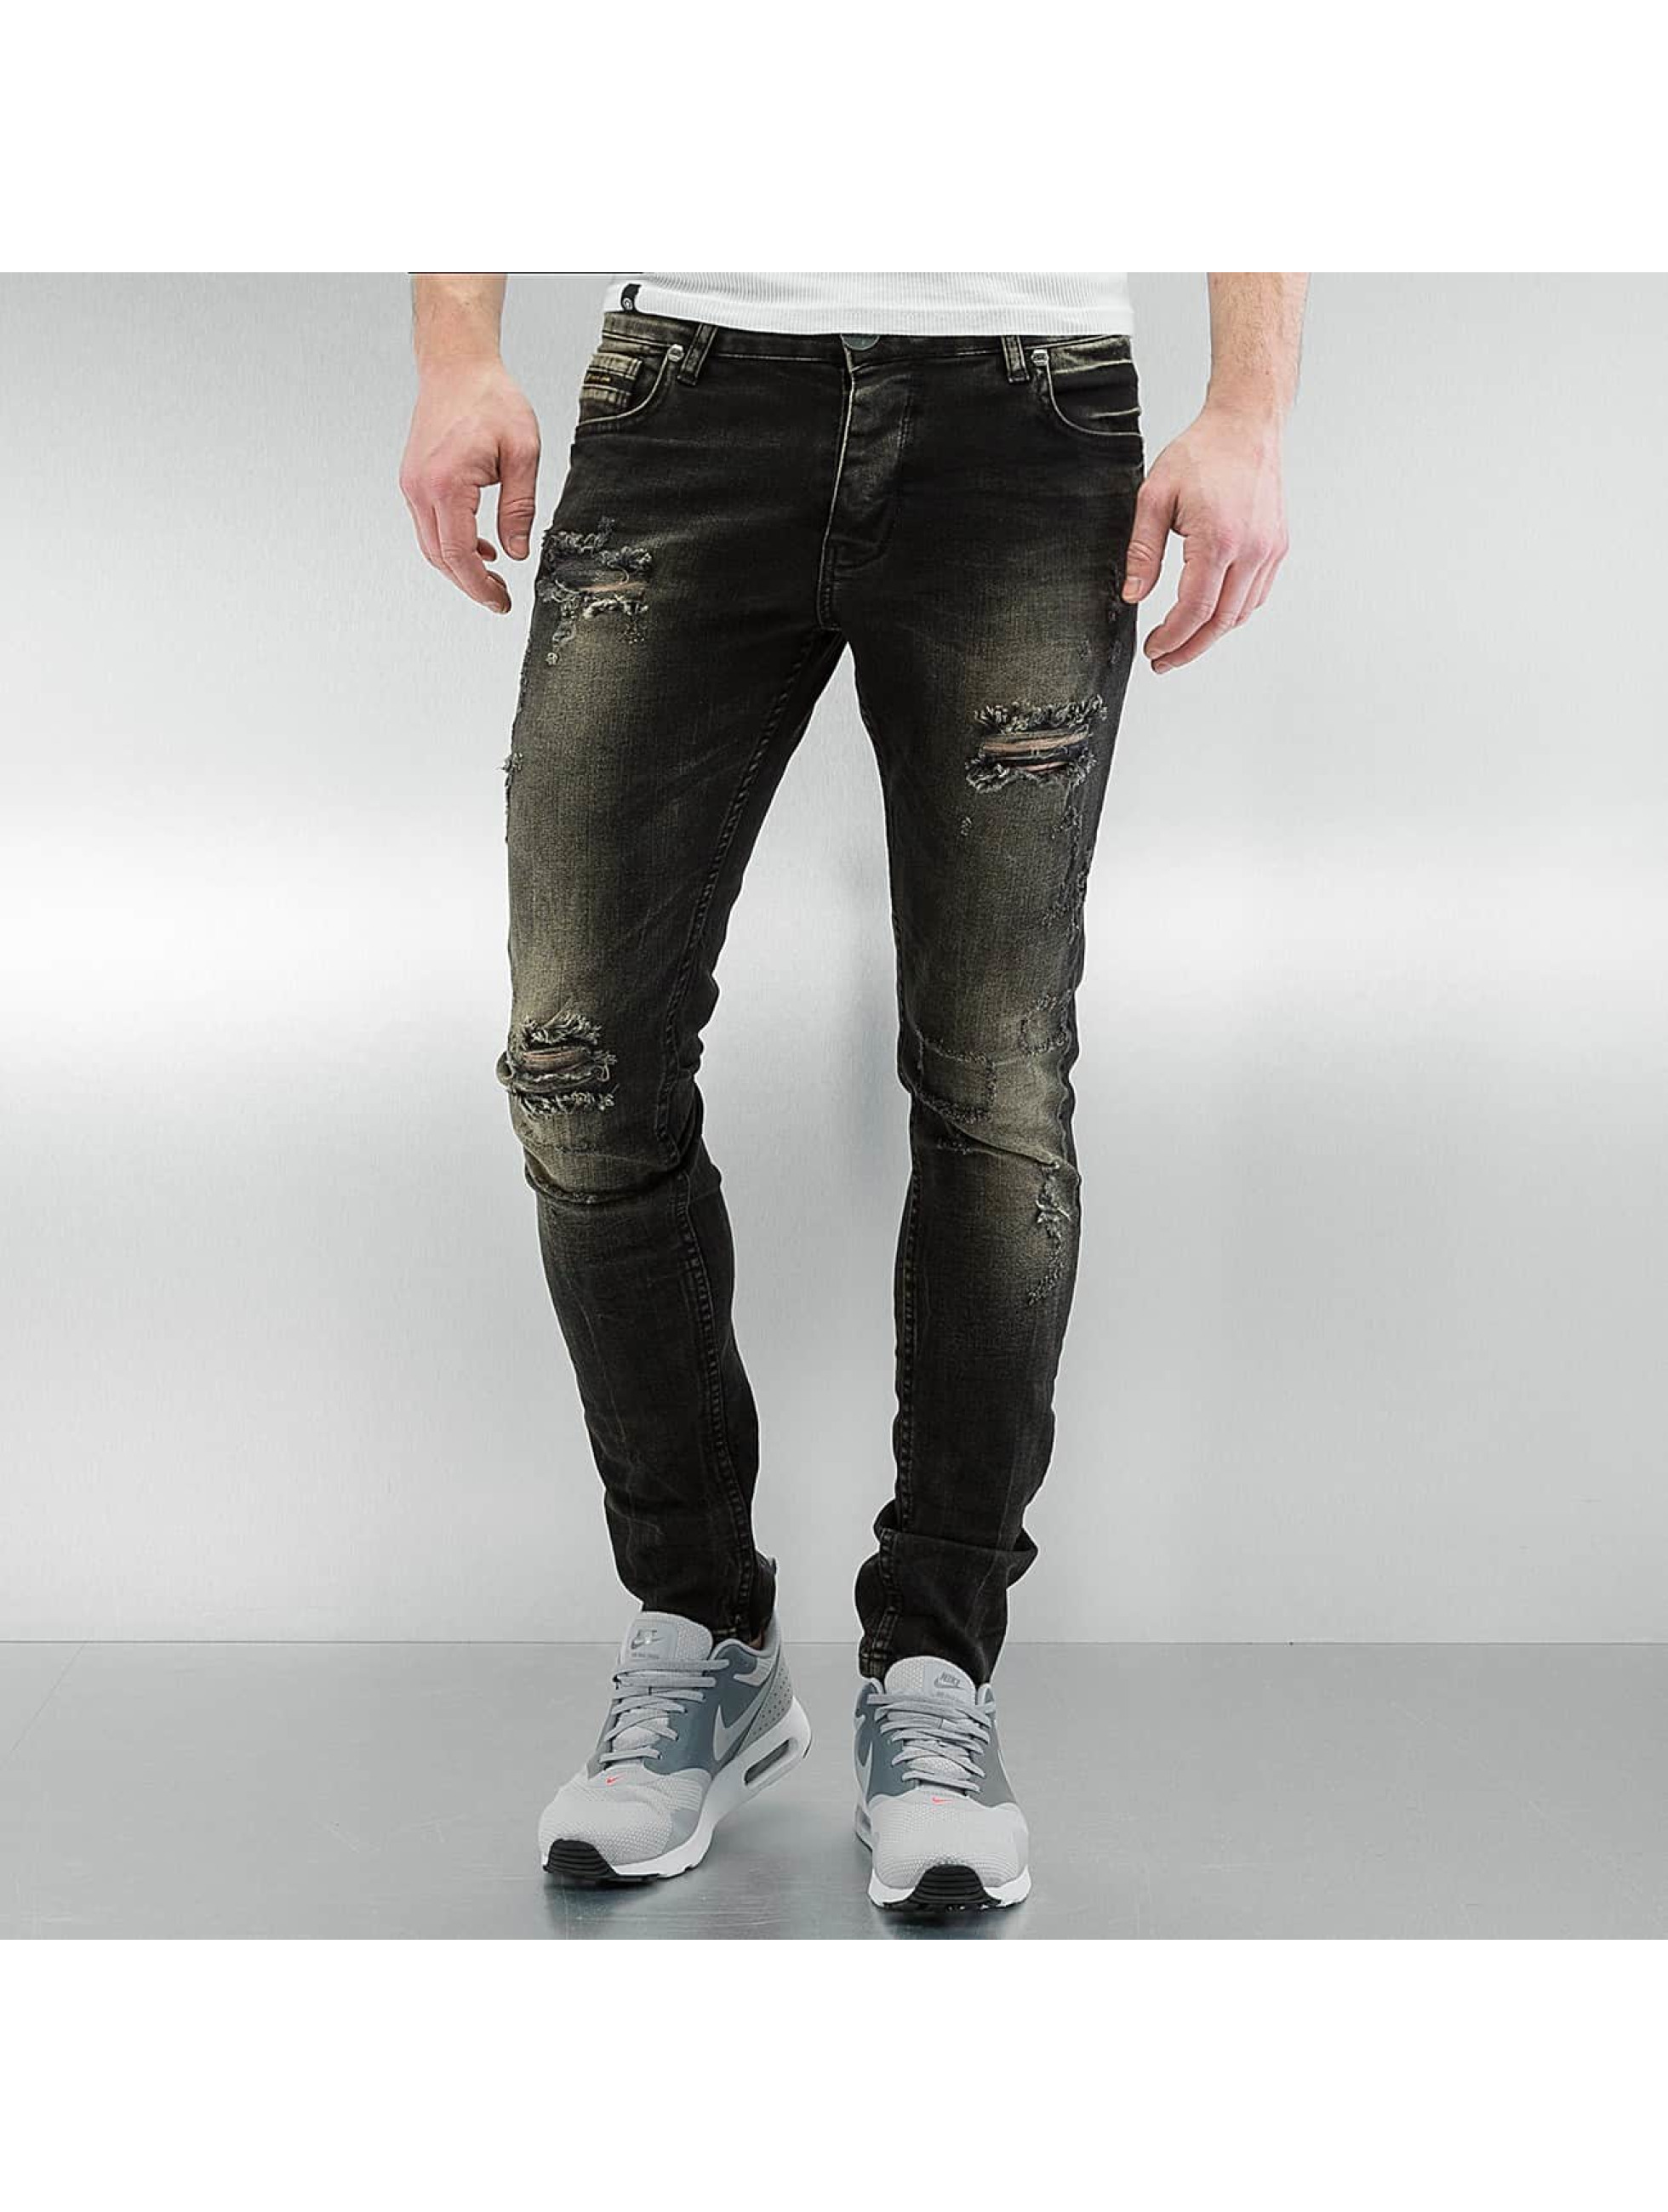 verkrachting omvatten heerser Denim trends voor mannen: deze jeans stijlen zijn een absolute must! |  DefShop Blog Nederland | Streetwear | Mode | Trends 